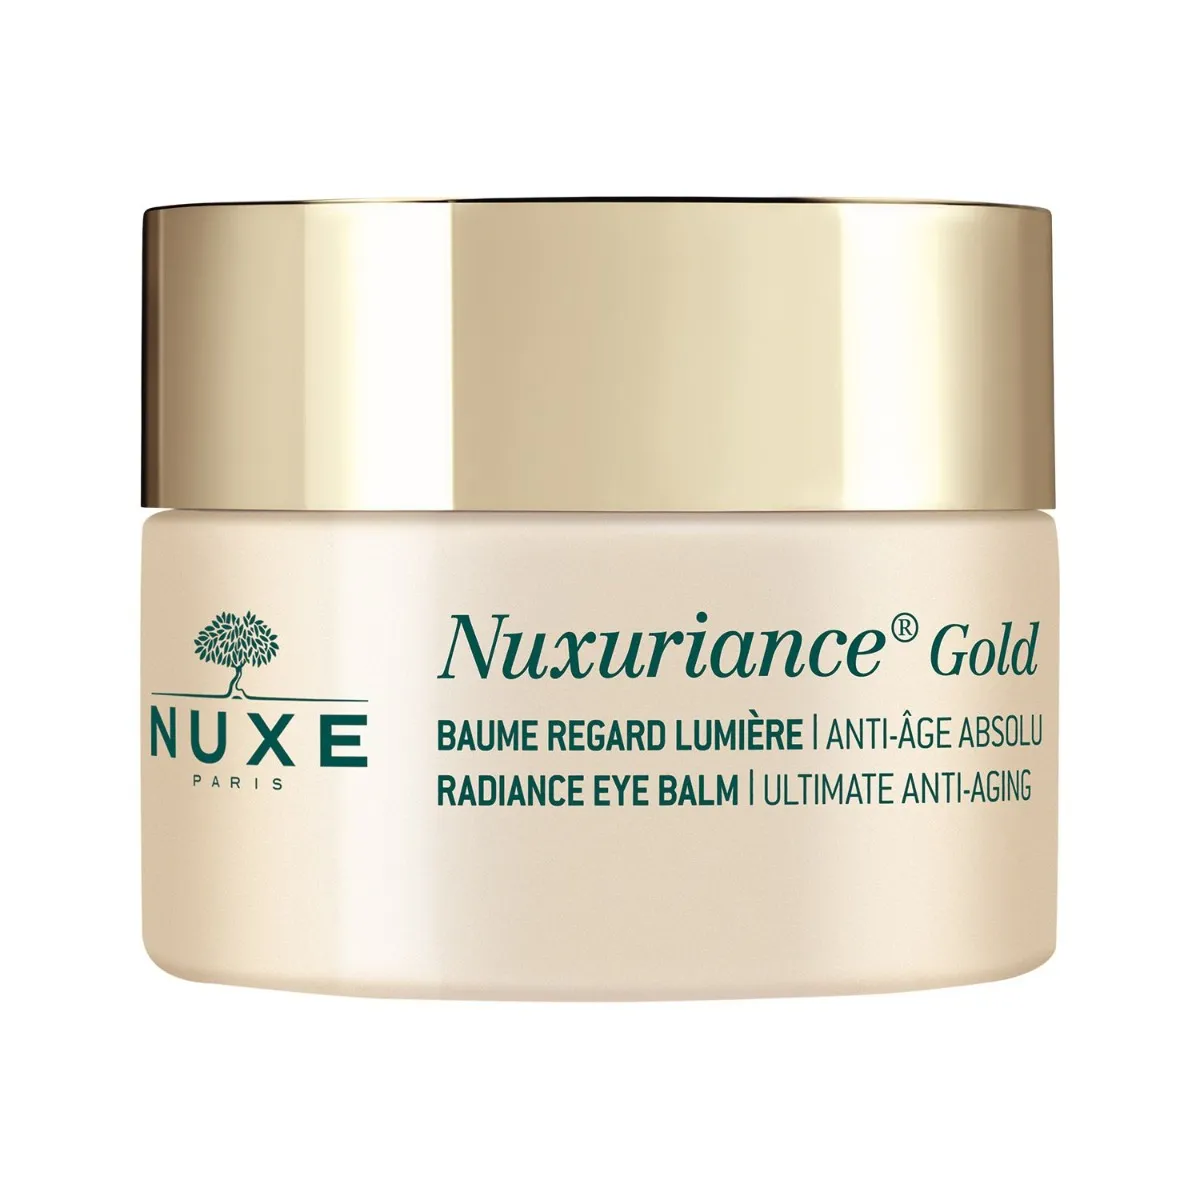 Nuxe Nuxuriance Gold, rozświetlający balsam pod oczy, 15 ml 